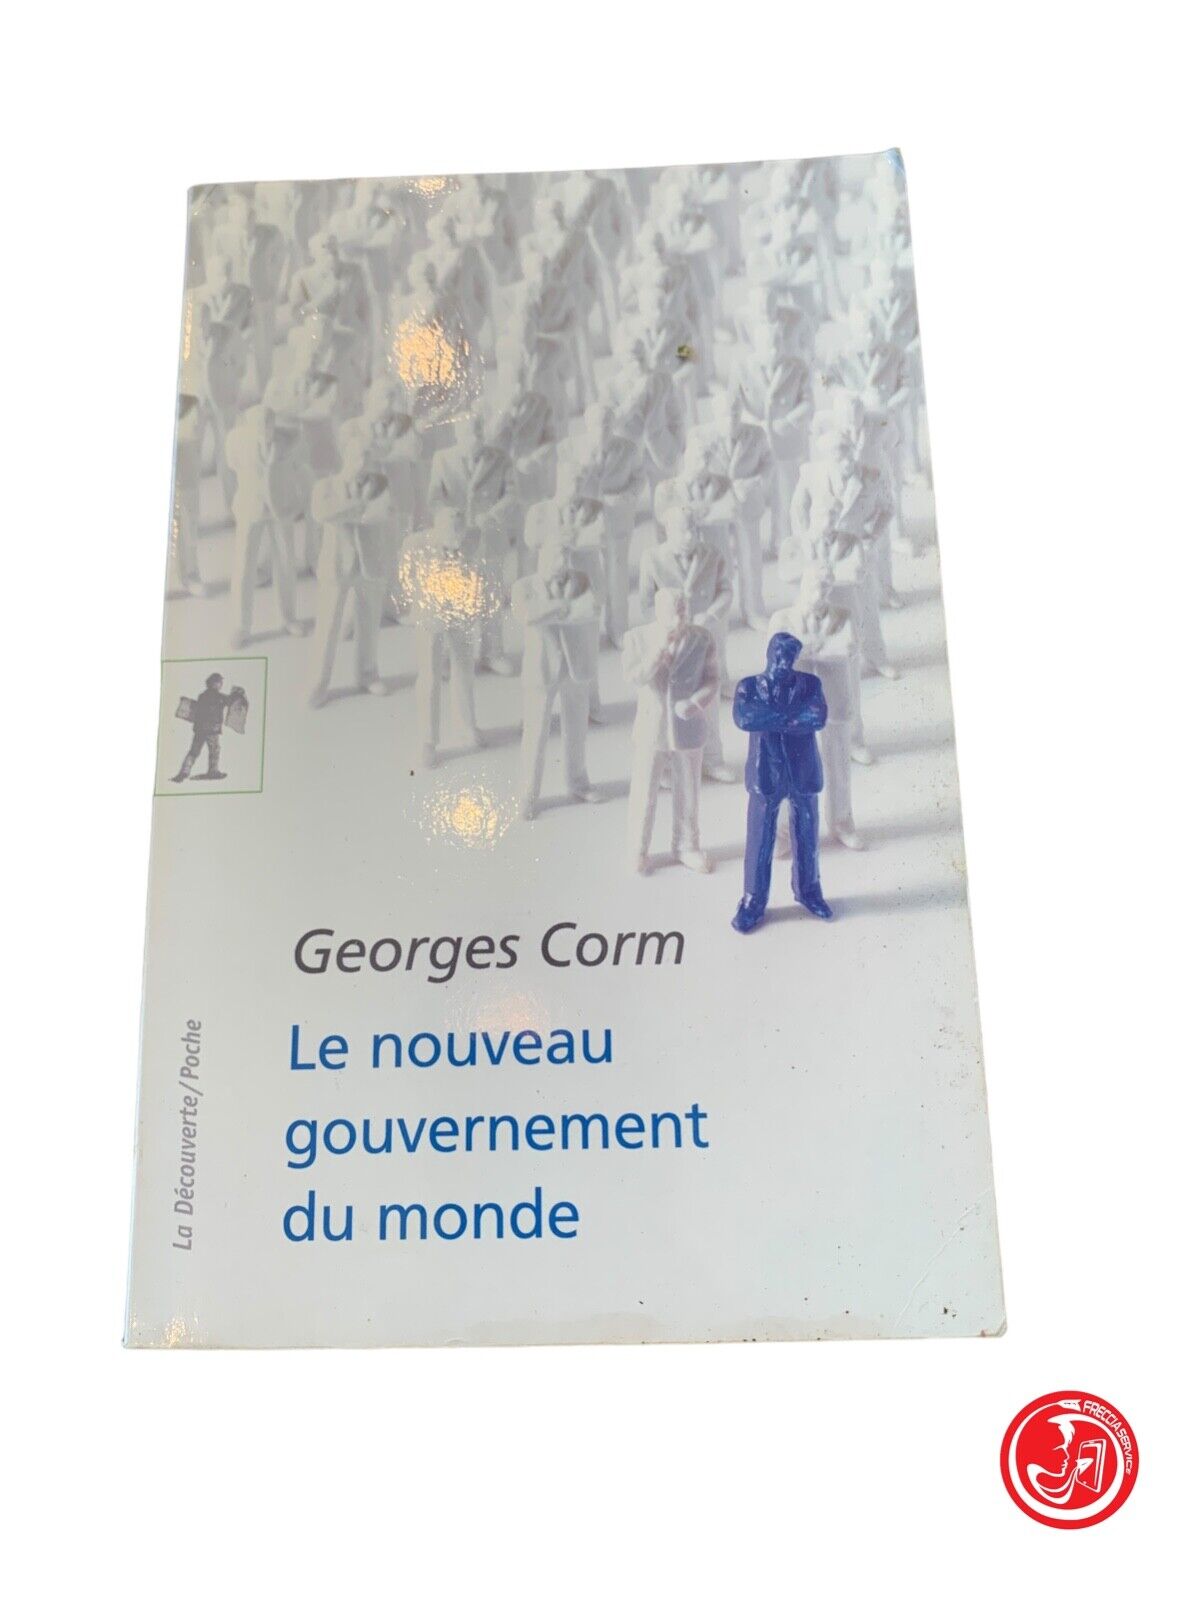 Le nouveau gouvernement du monde - Georges Corm - La Découverte 2013